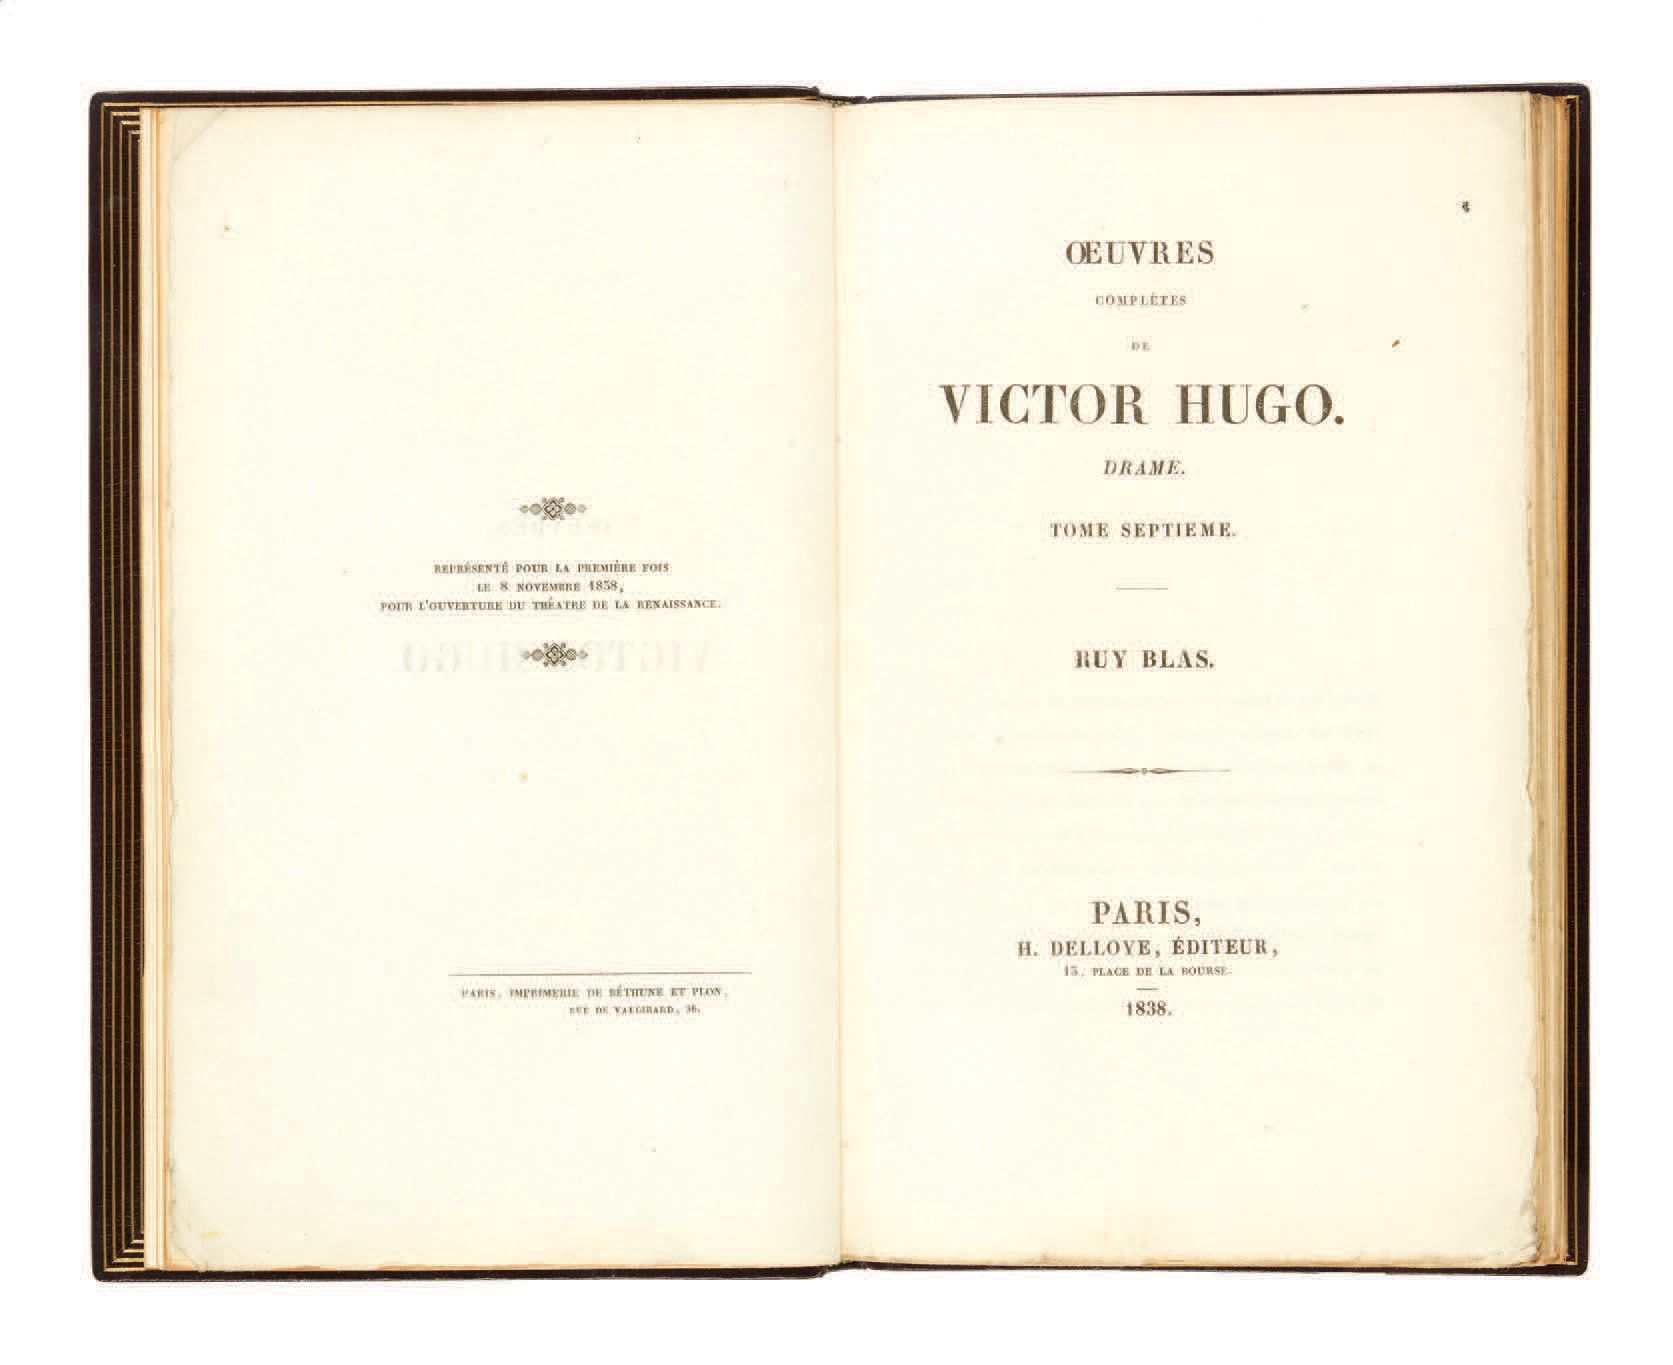 VICTOR HUGO. Ruy Blas. París, H. Delloye, 1838.
In-8, morocco de grano largo col&hellip;